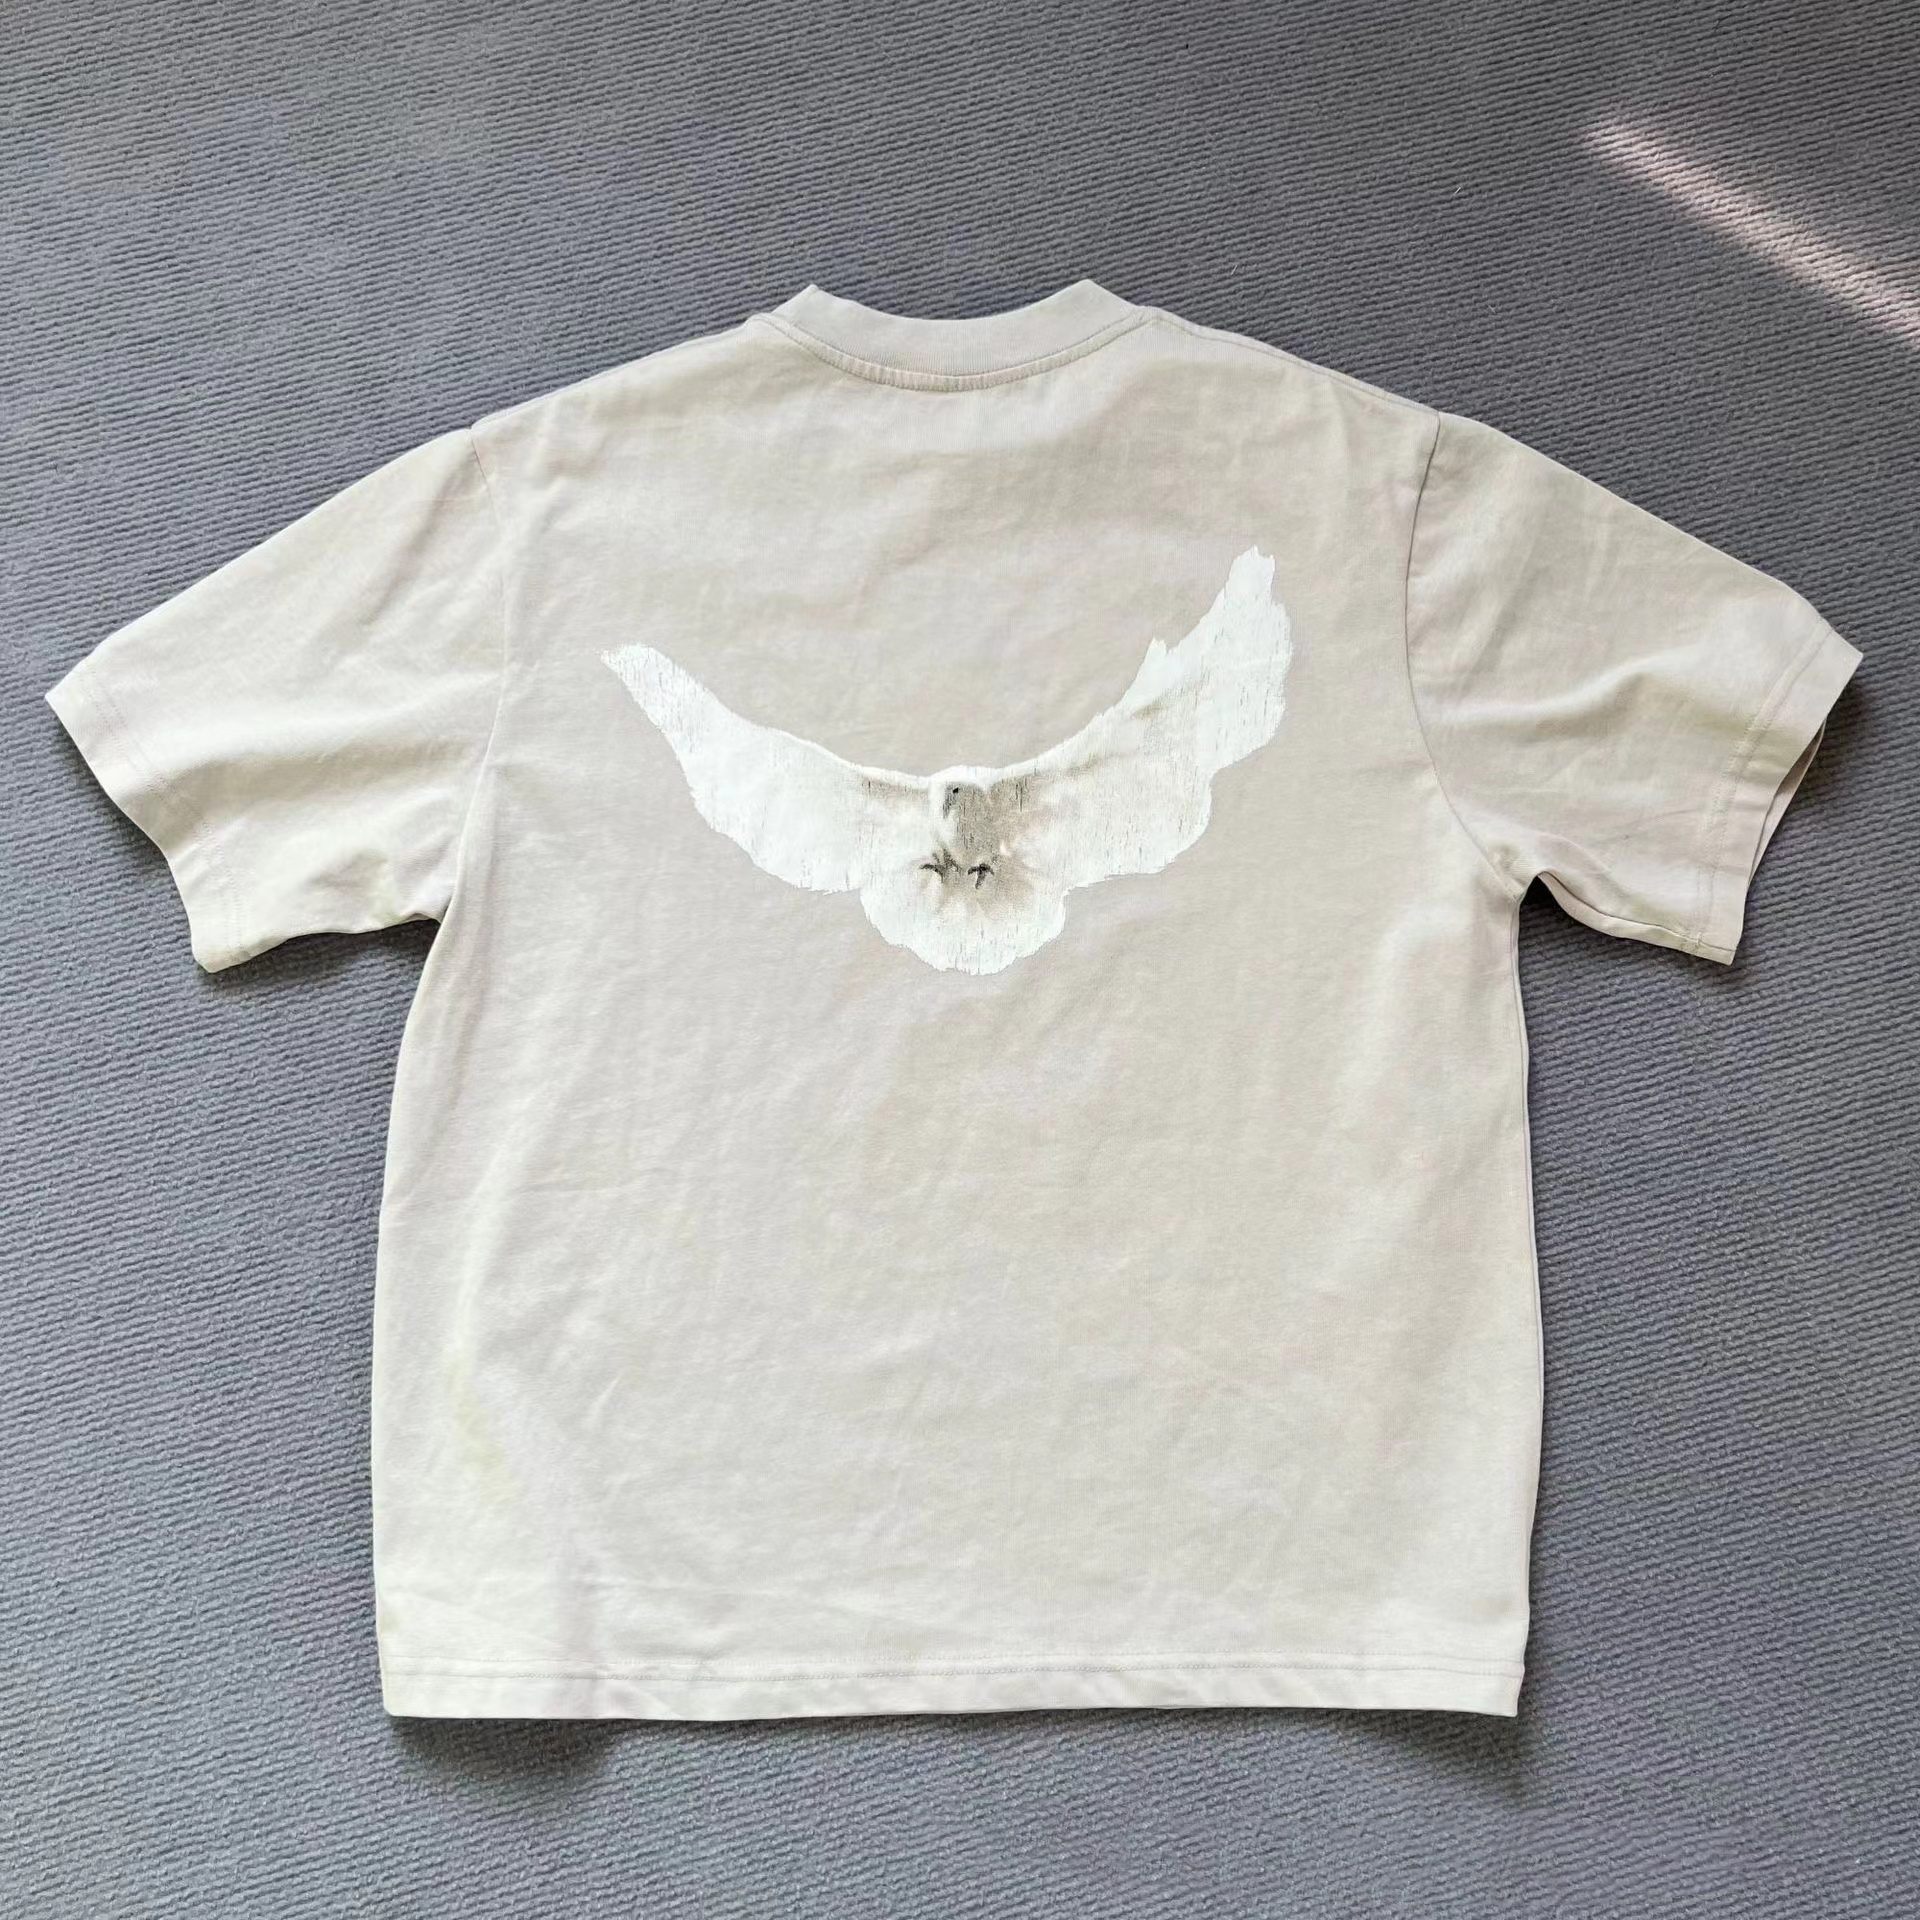 hommes designer t-shirt t-shirt designe chemise 260g poids coton febric hommes femmes unisexe motif colombe en gros 2 pièces 5% de réduction